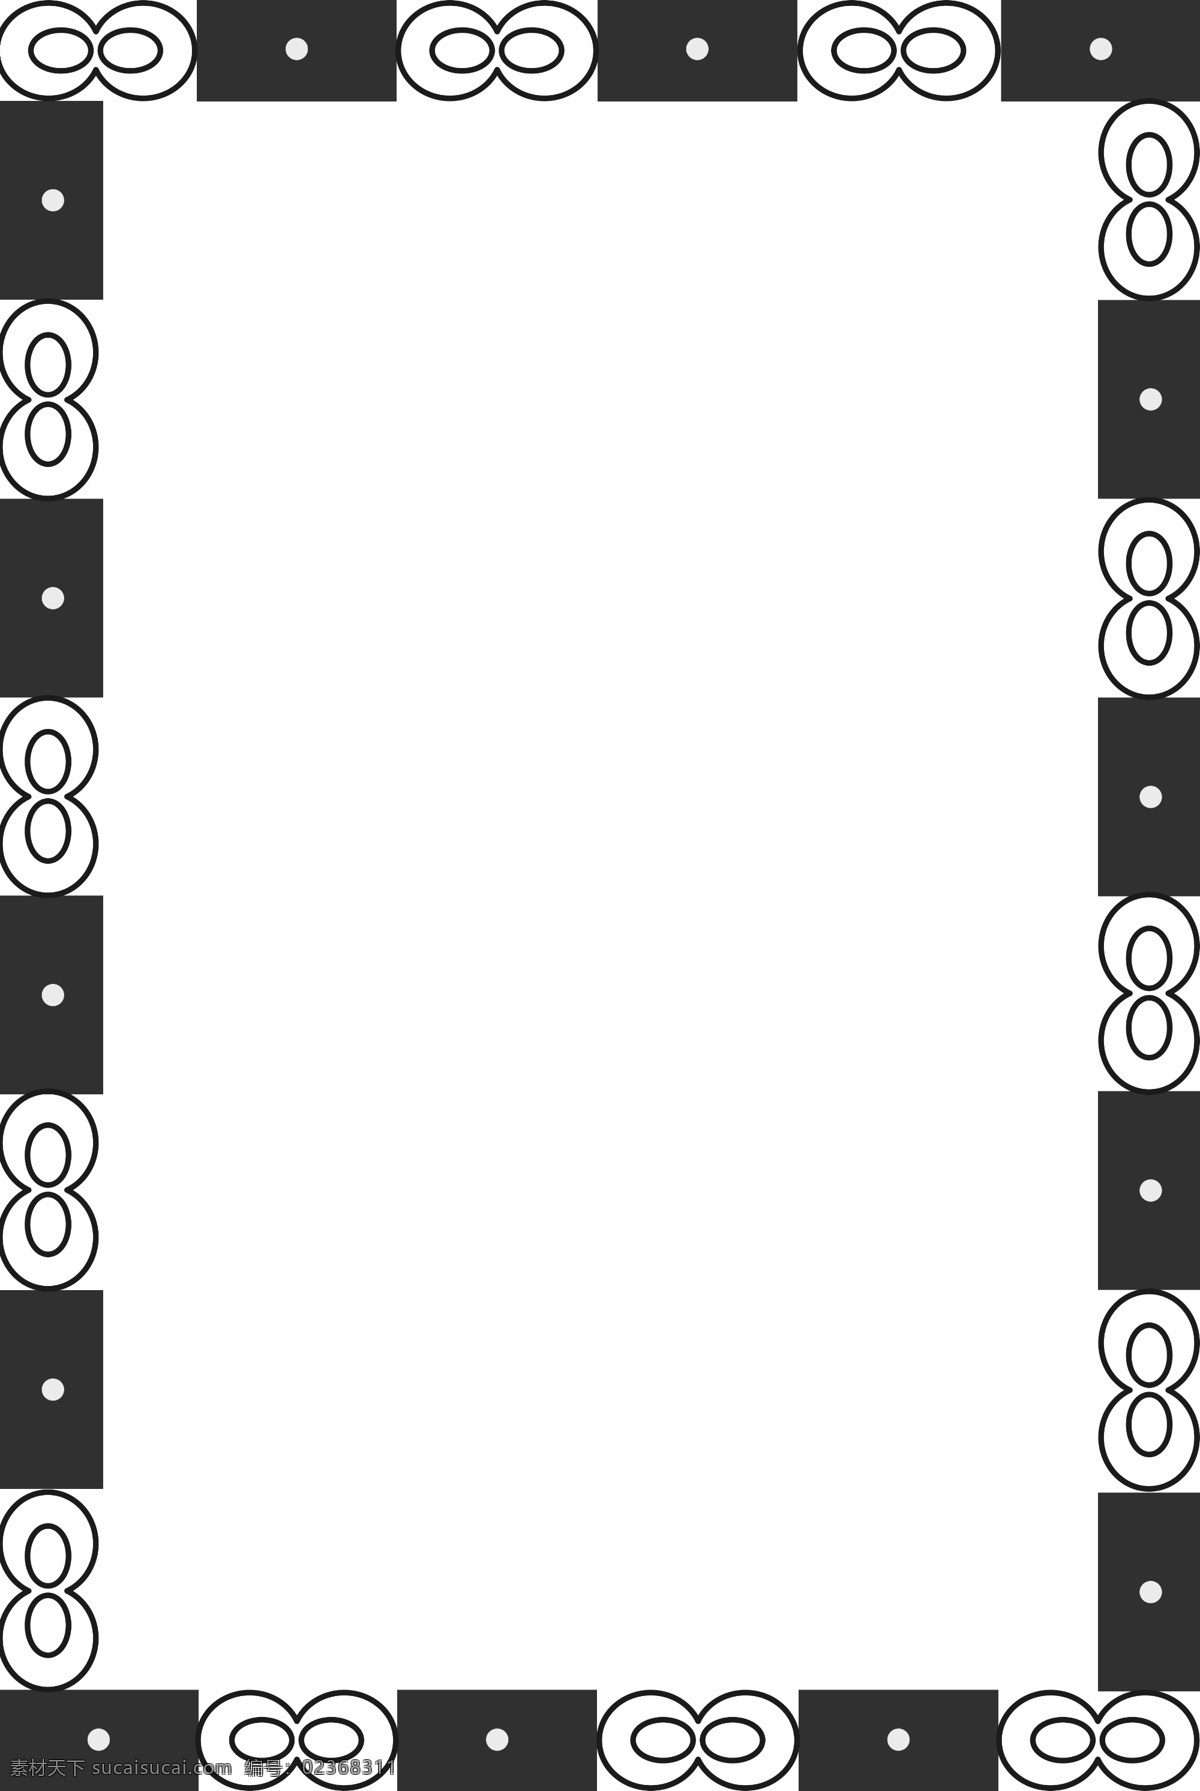 几何 风 抽象 简约 黑白 边框 单色 蝴蝶结 格子 双扣 点 长方形 时尚 大牌 简洁 个性